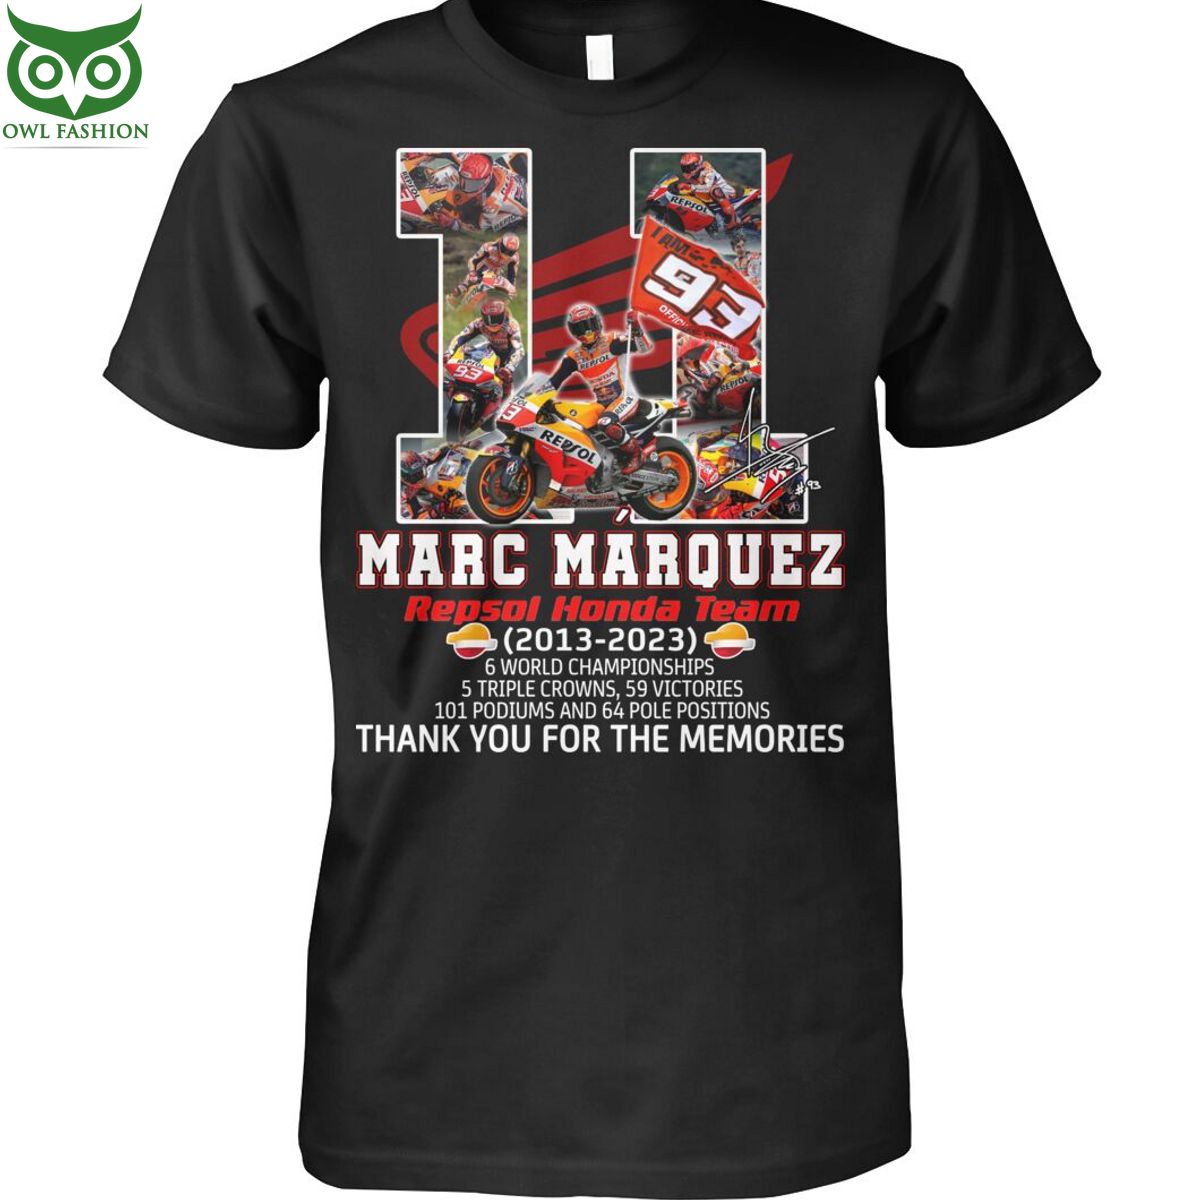 Marc Marquez 11 years repsol honda team championships 2013 2023 t shirt Race Shop Owl Fashion